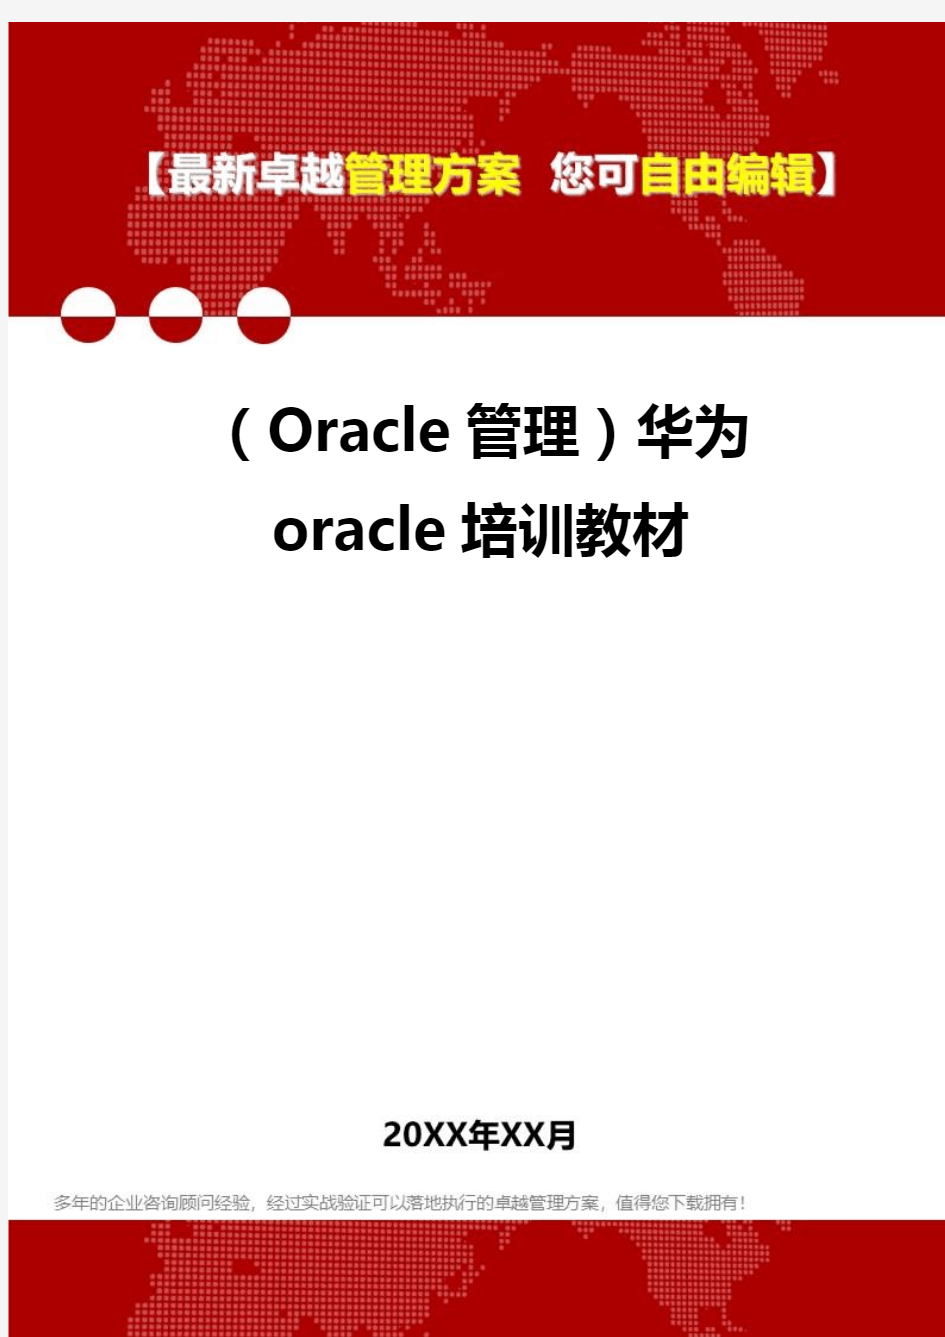 2020年(Oracle管理)华为oracle培训教材